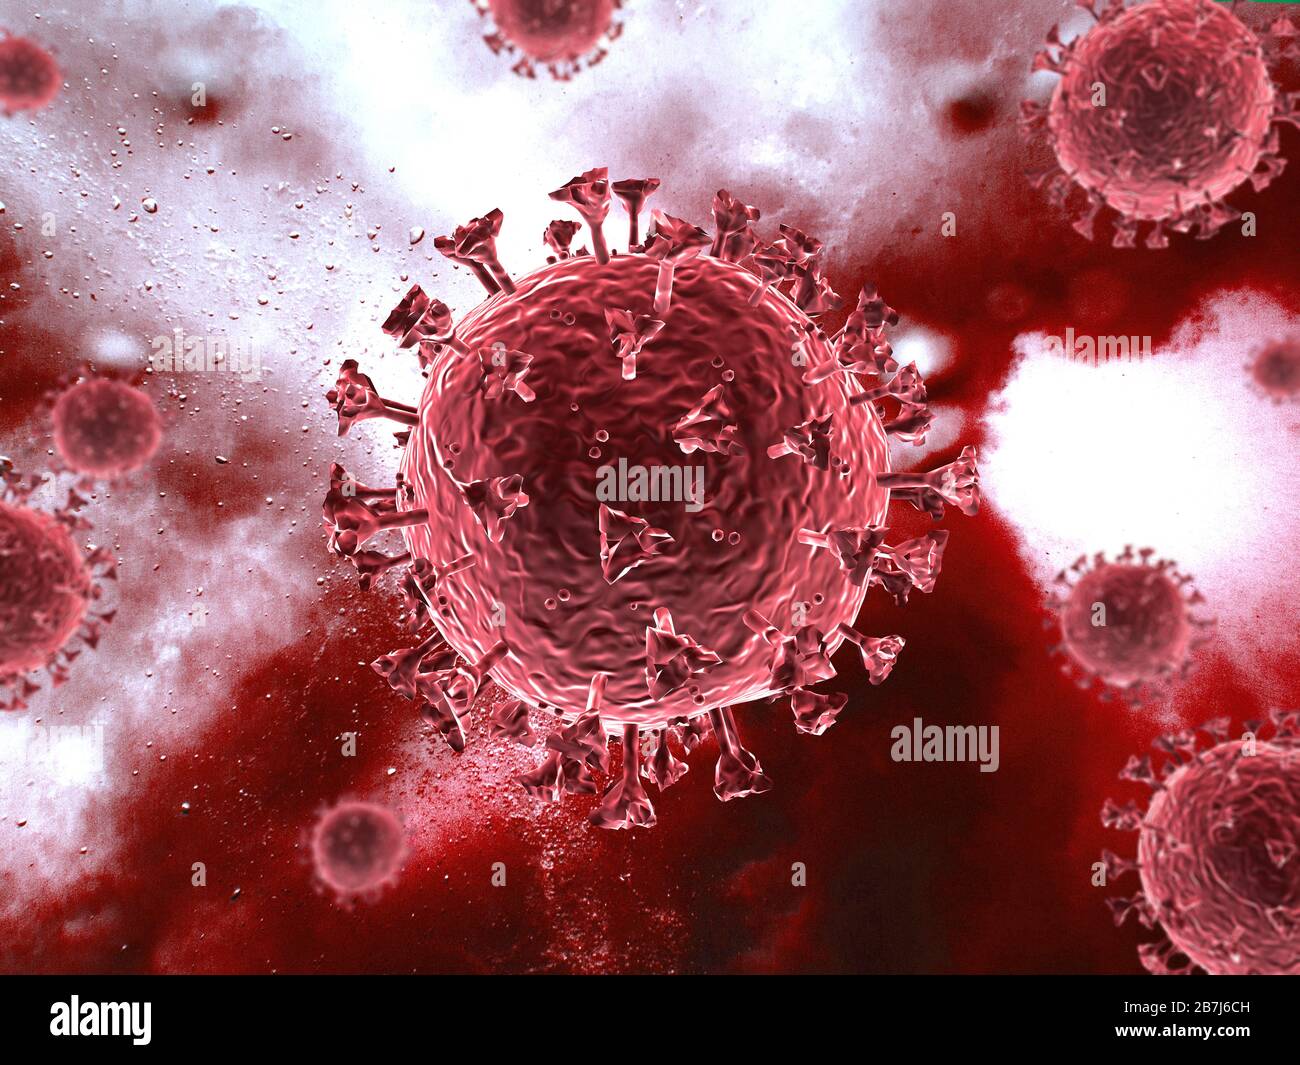 Scène du virus Corona avec structure détaillée. Sujets rouges sur fond rouge. rendu tridimensionnel. Banque D'Images